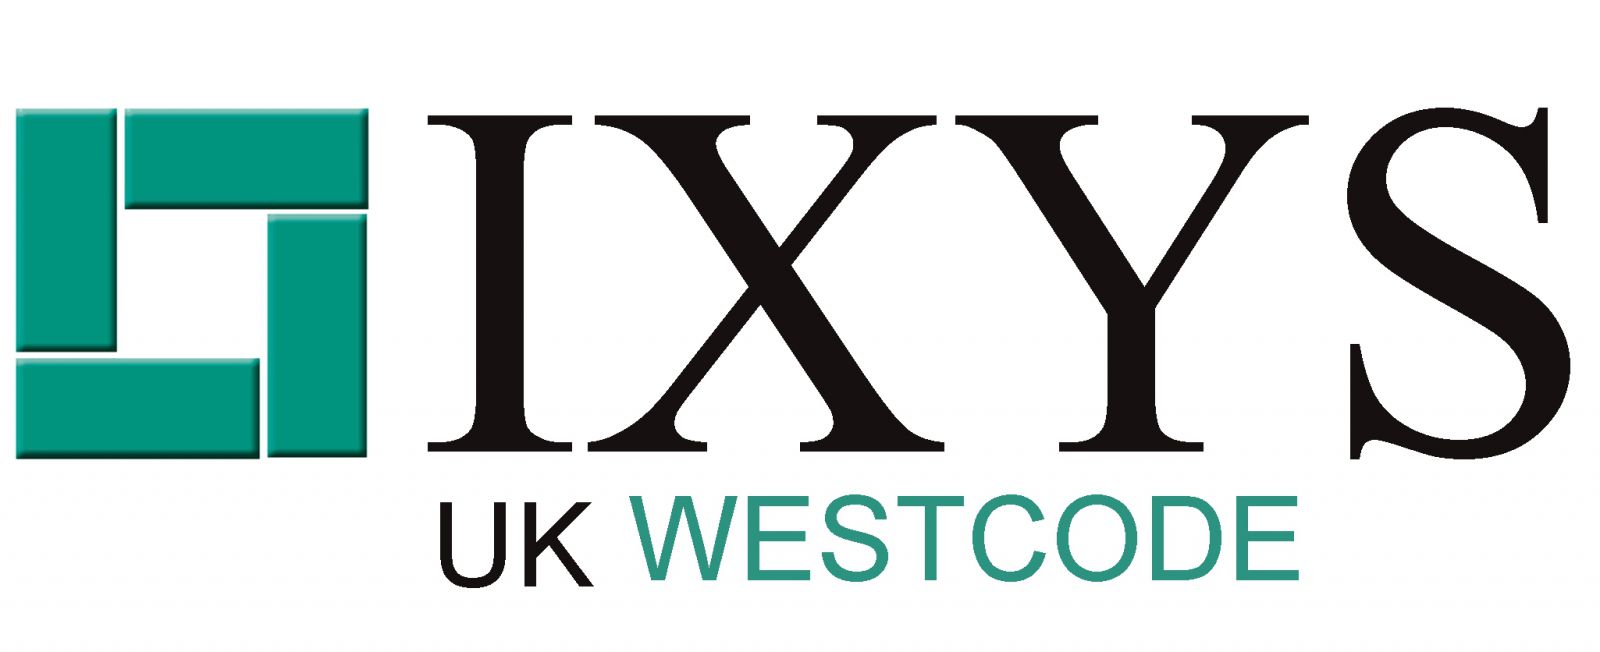 IXYS UK Westcode